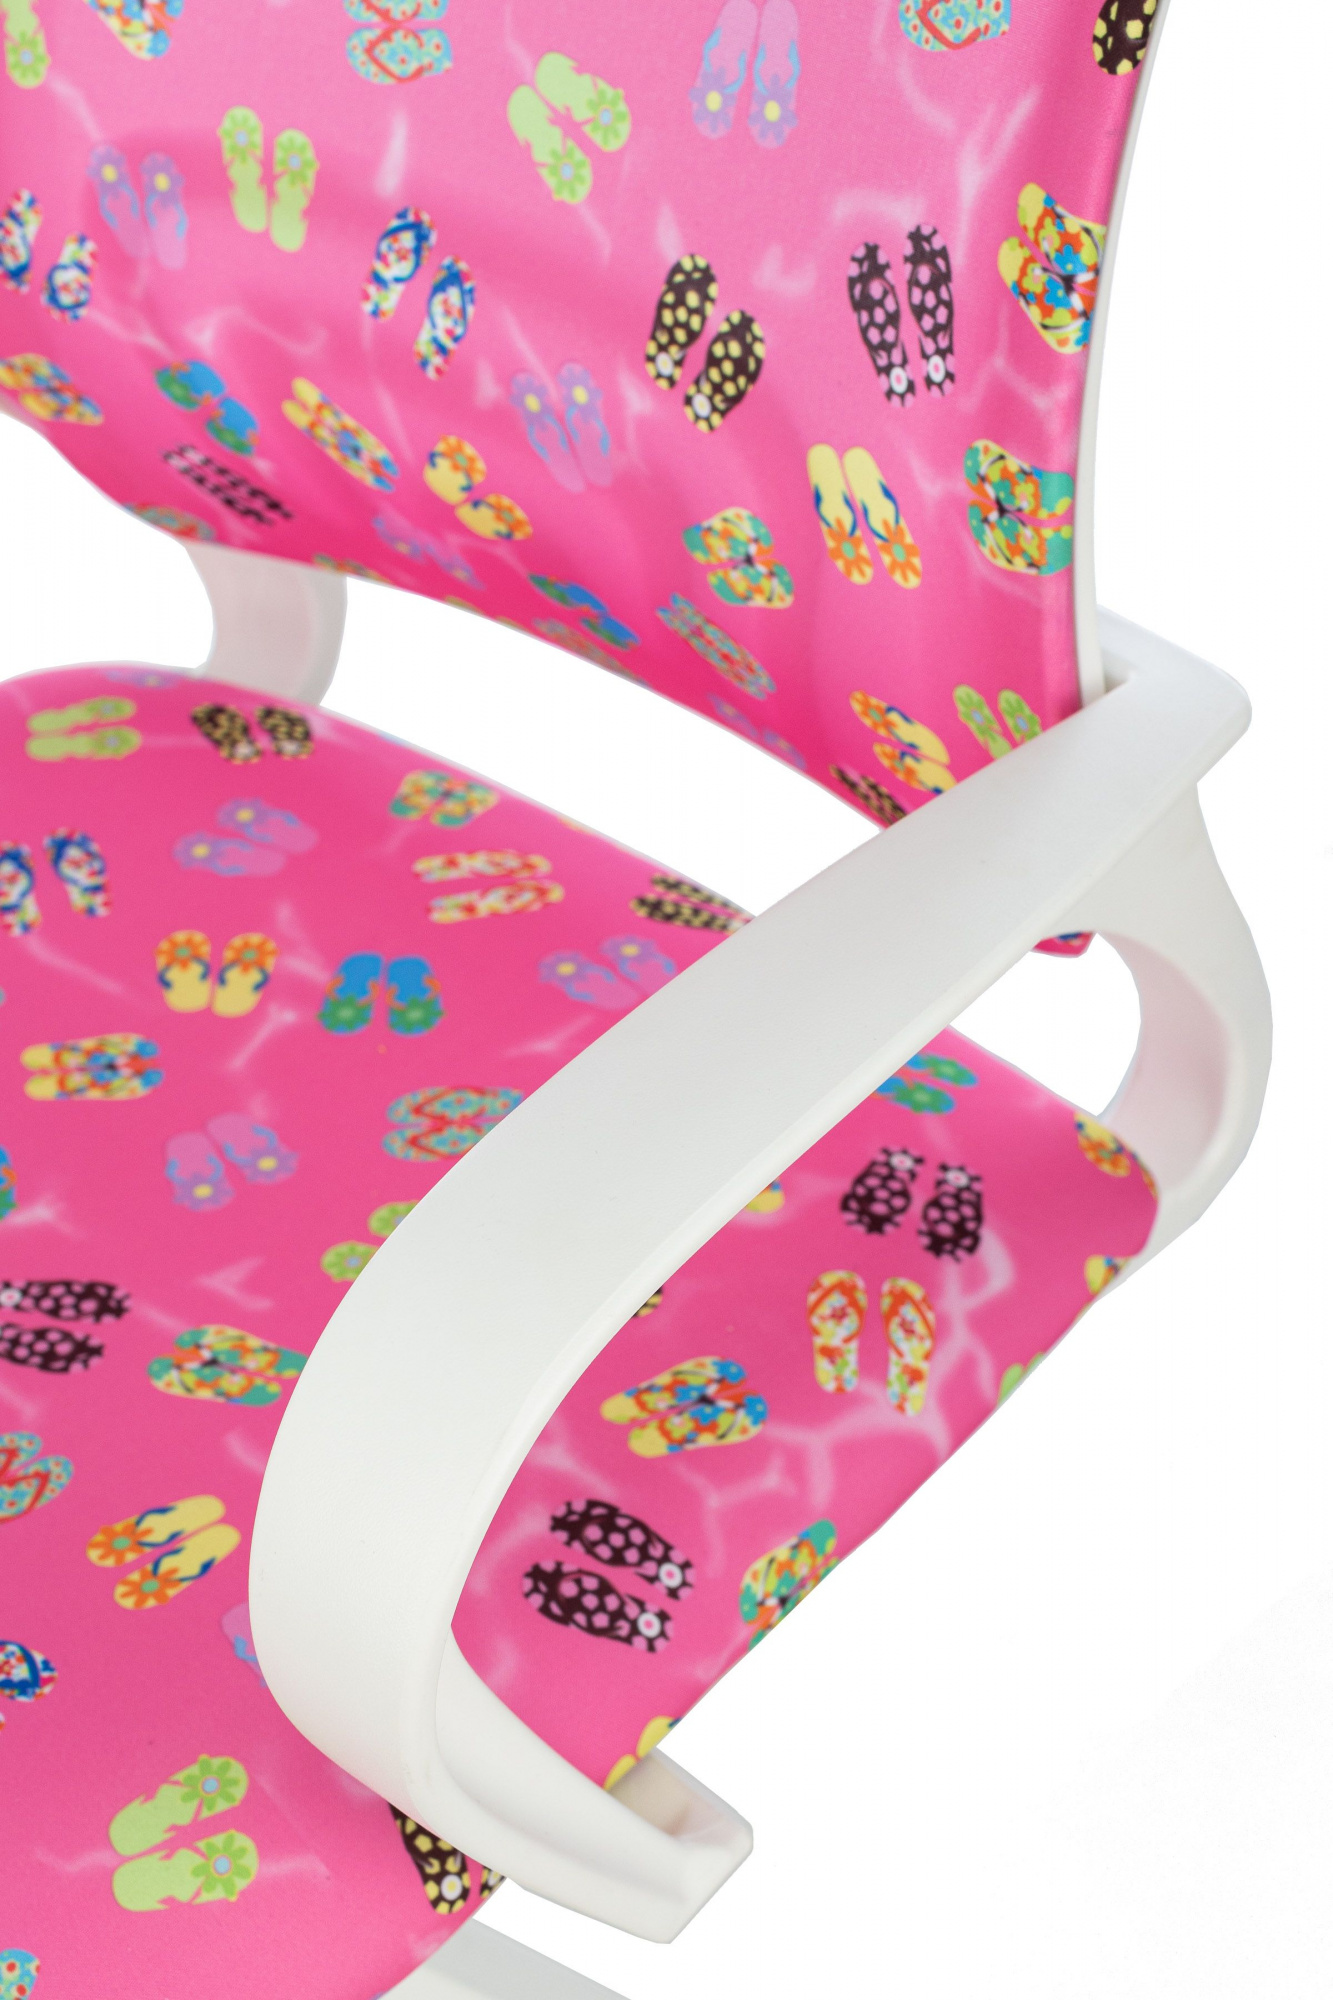 Кресло детское Бюрократ BUROKIDS 1 W, обивка: ткань, цвет: розовый, рисунок сланцы (BUROKIDS 1 W-FLIPFLO) от магазина Buro.store